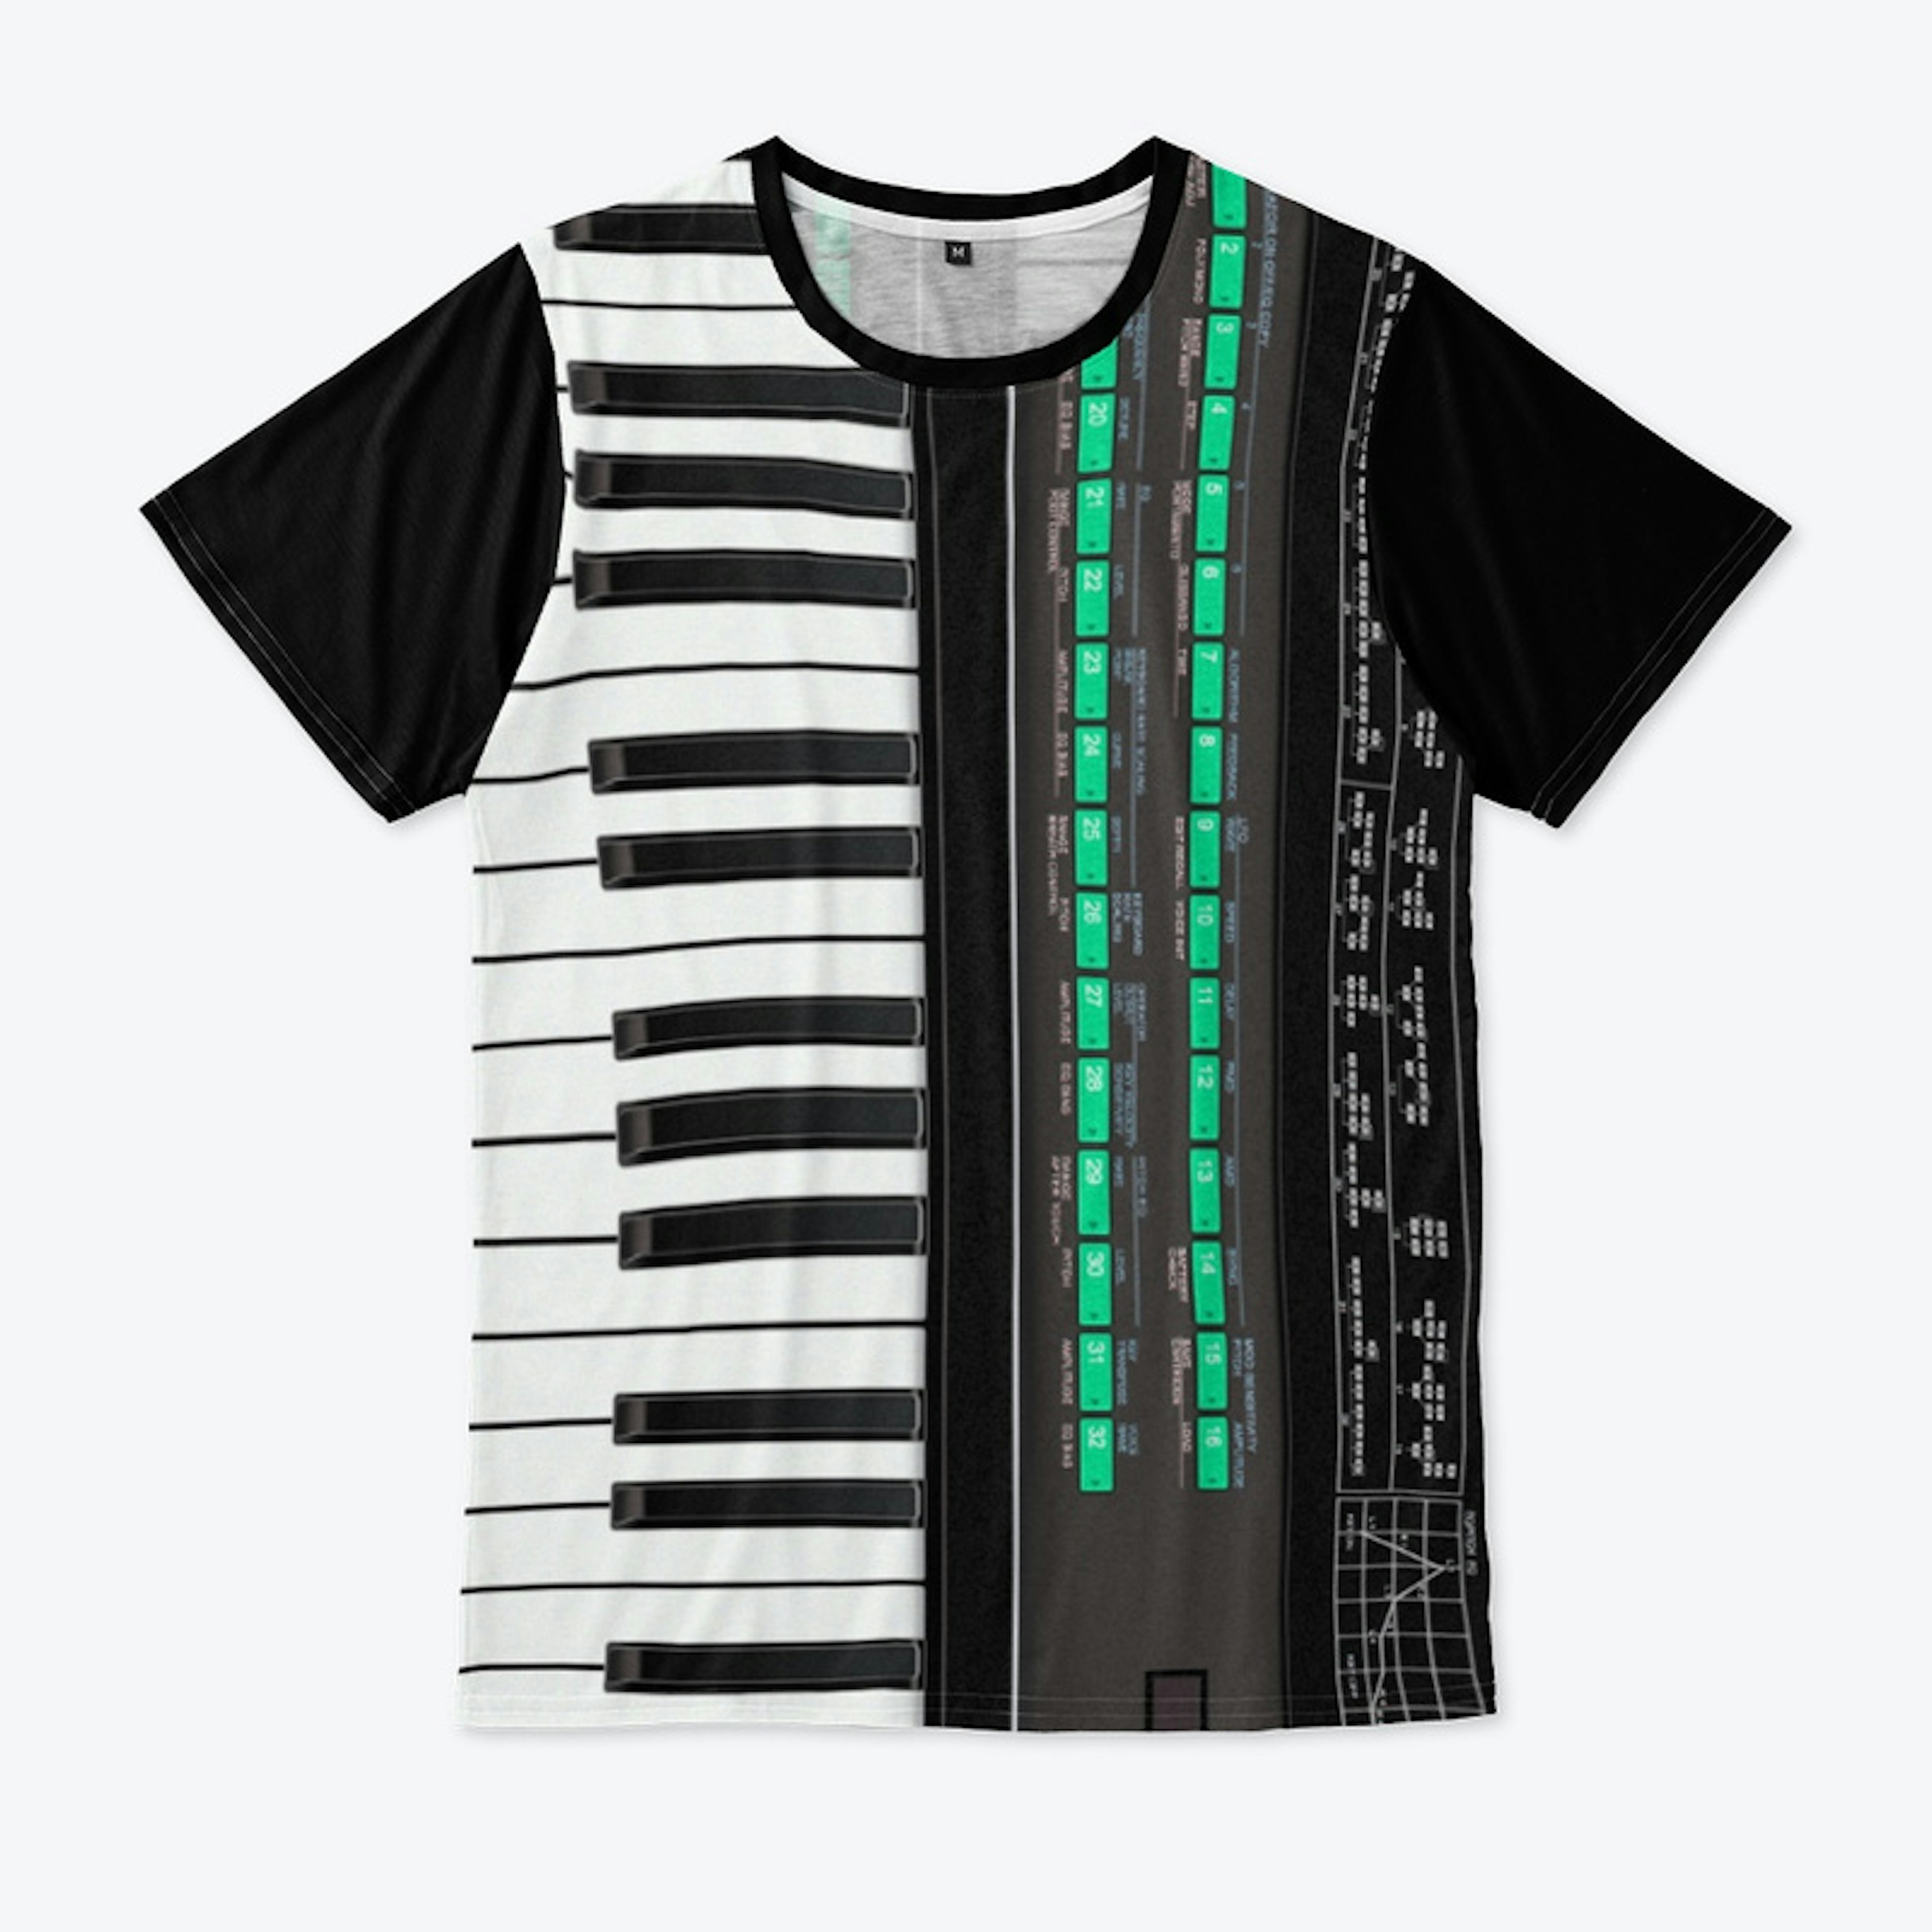 FM Synthesizer Shirt